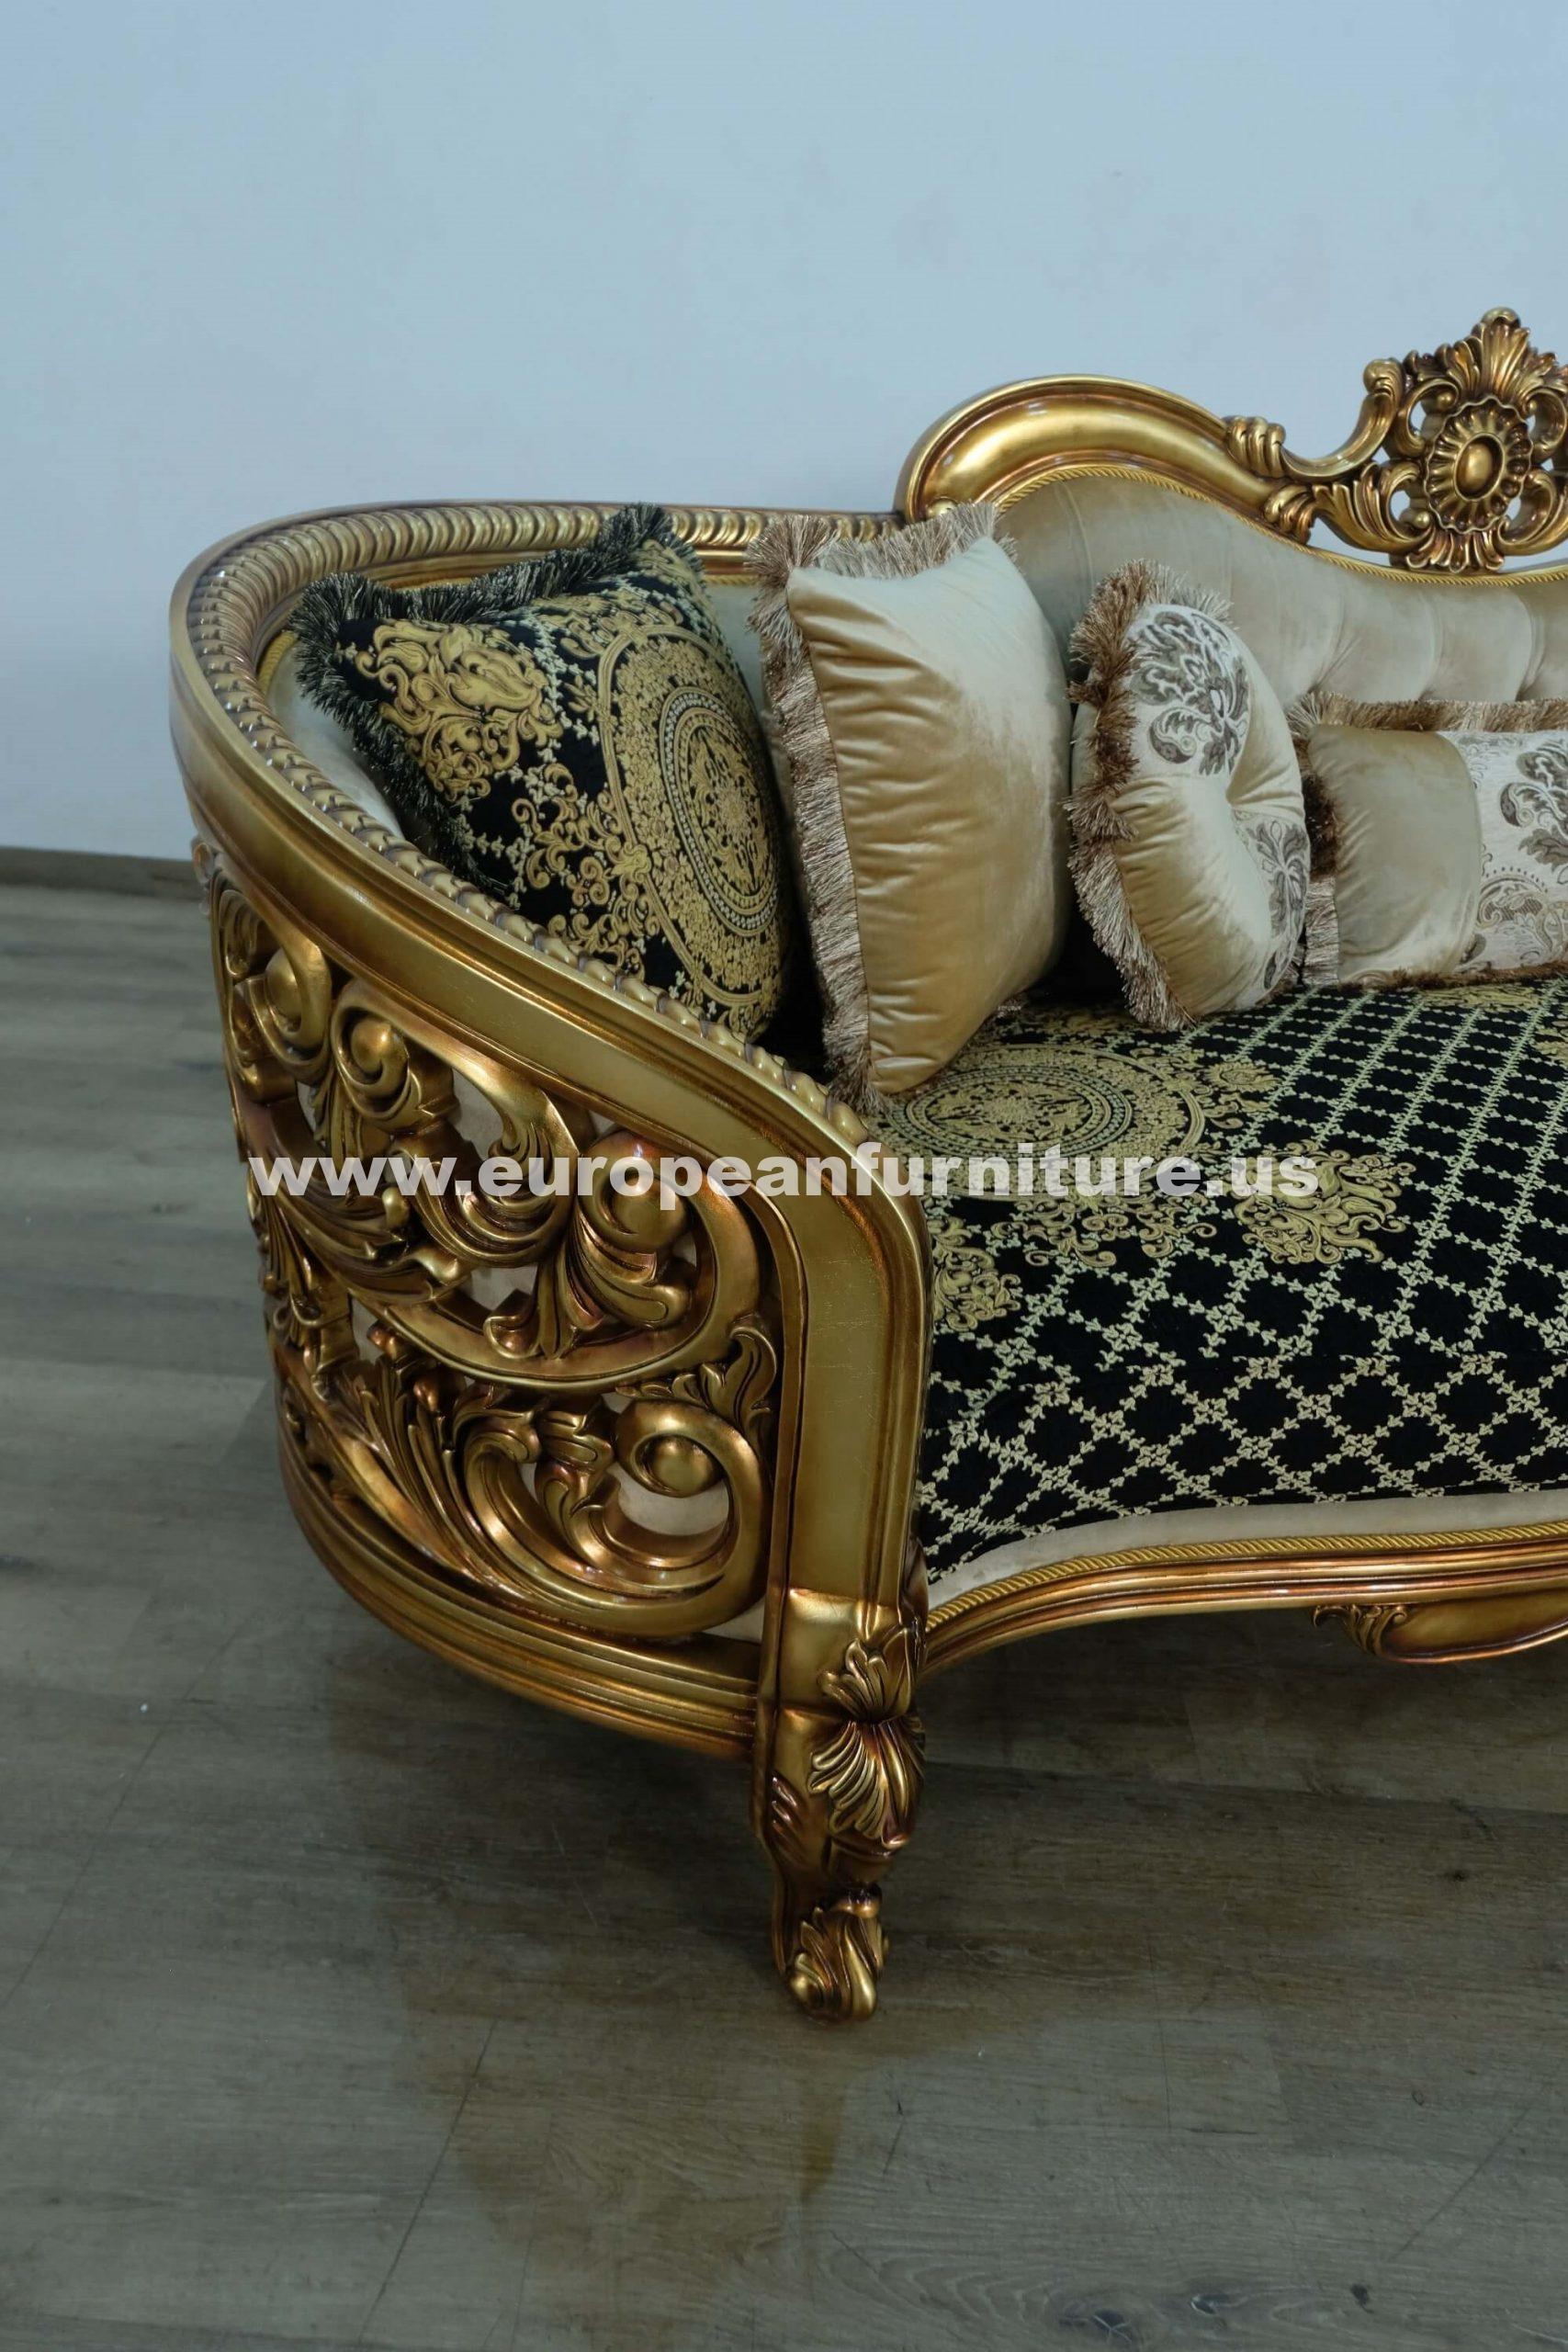 

                    
EUROPEAN FURNITURE BELLAGIO Sofa Antique/Bronze/Black Fabric Purchase 
